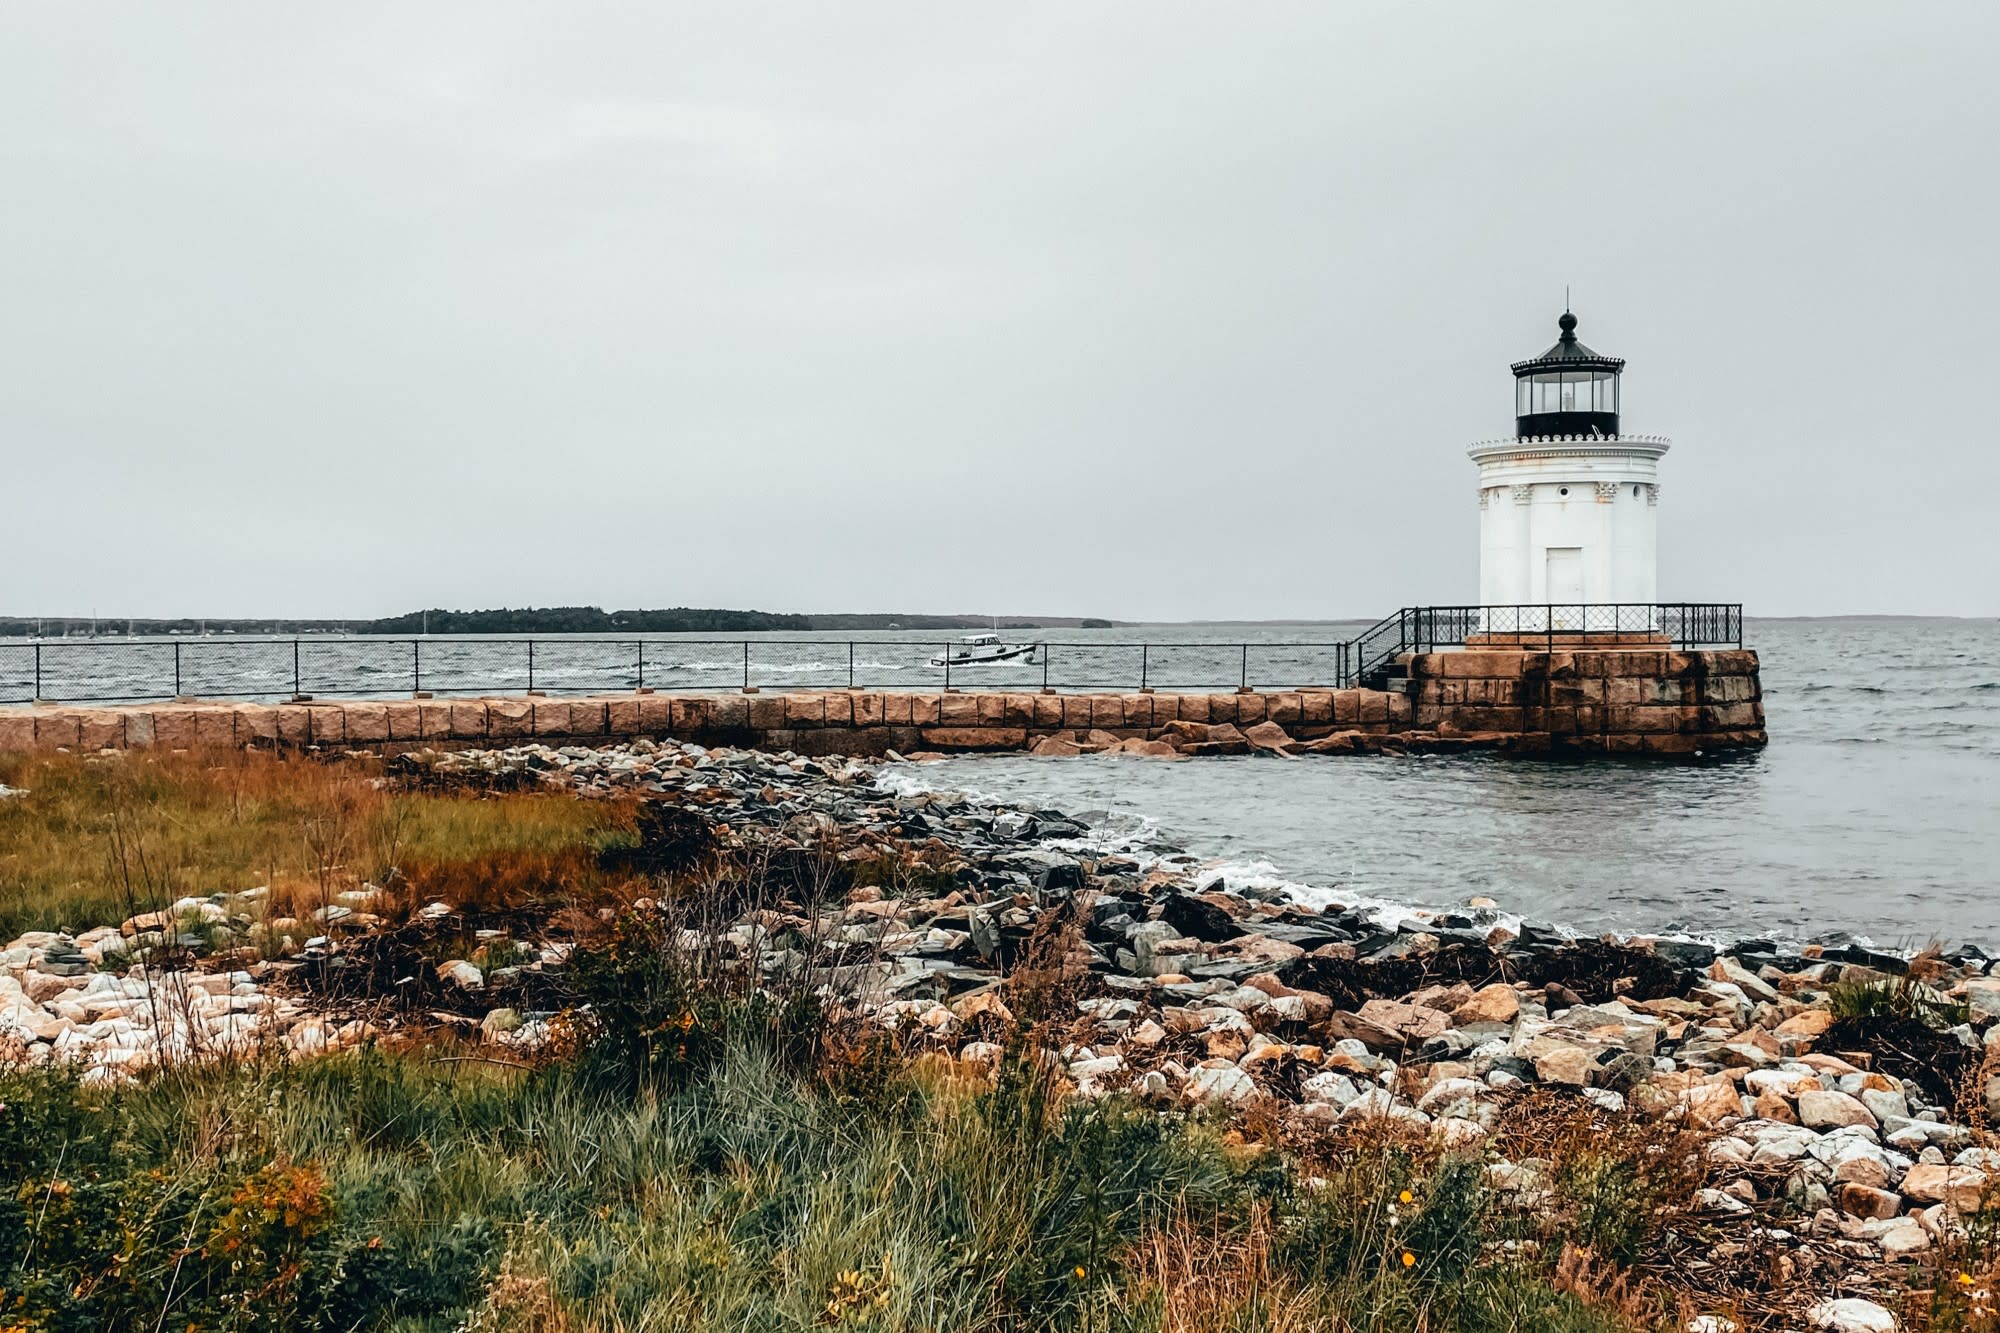 Portland, Maine lighthouse